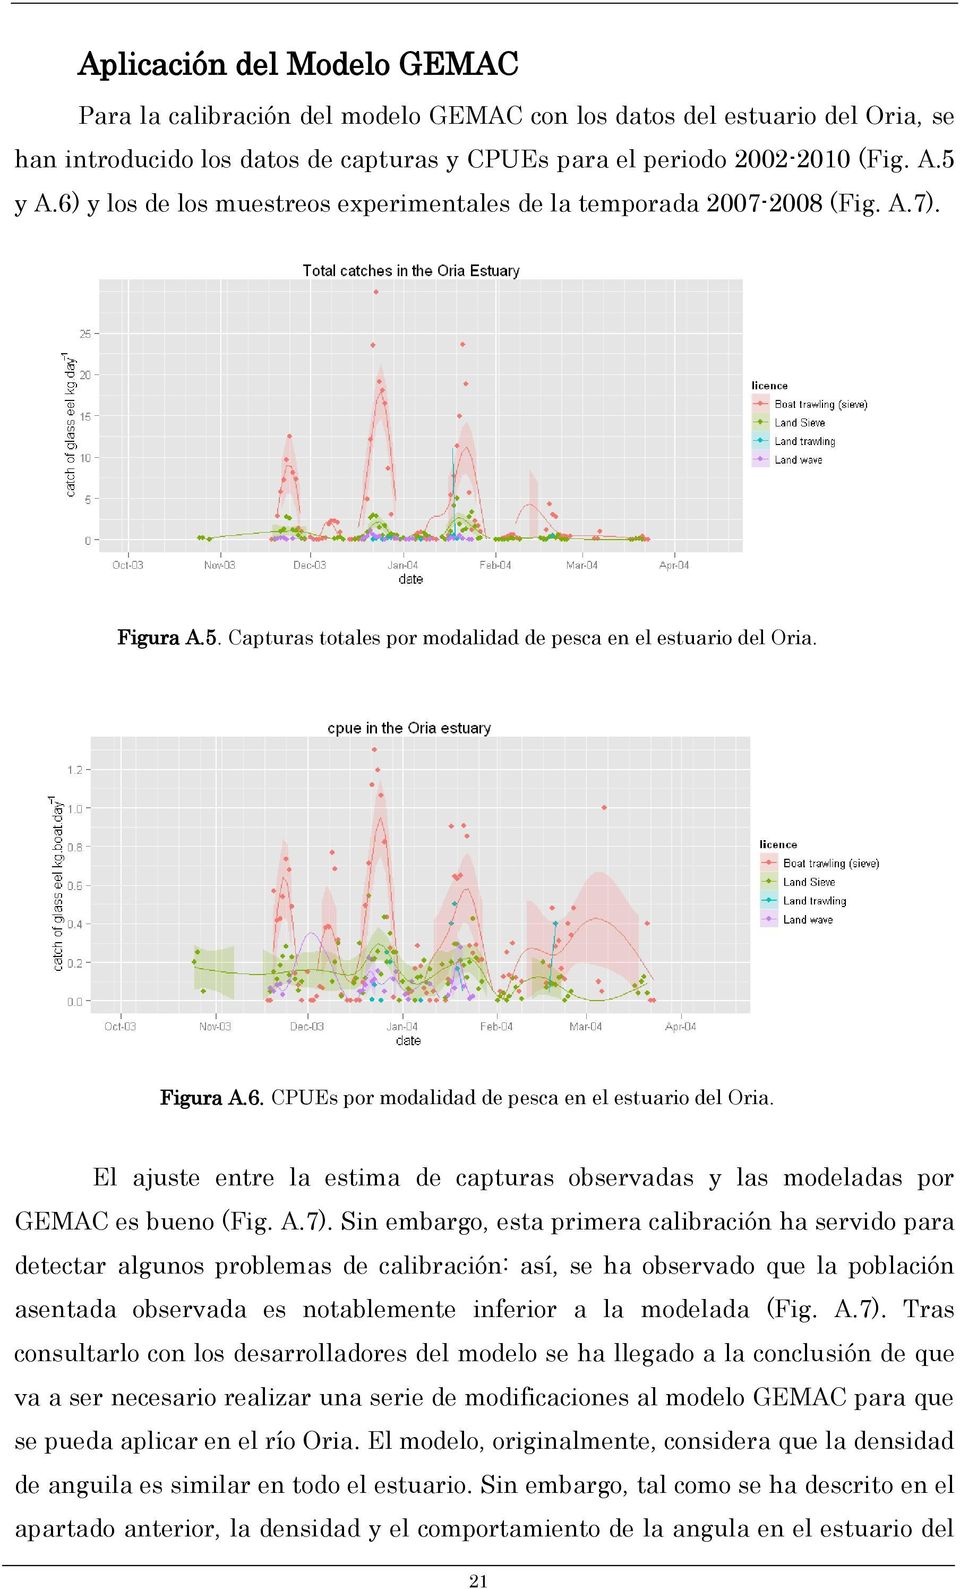 El ajuste entre la estima de capturas observadas y las modeladas por GEMAC es bueno (Fig. A.7).